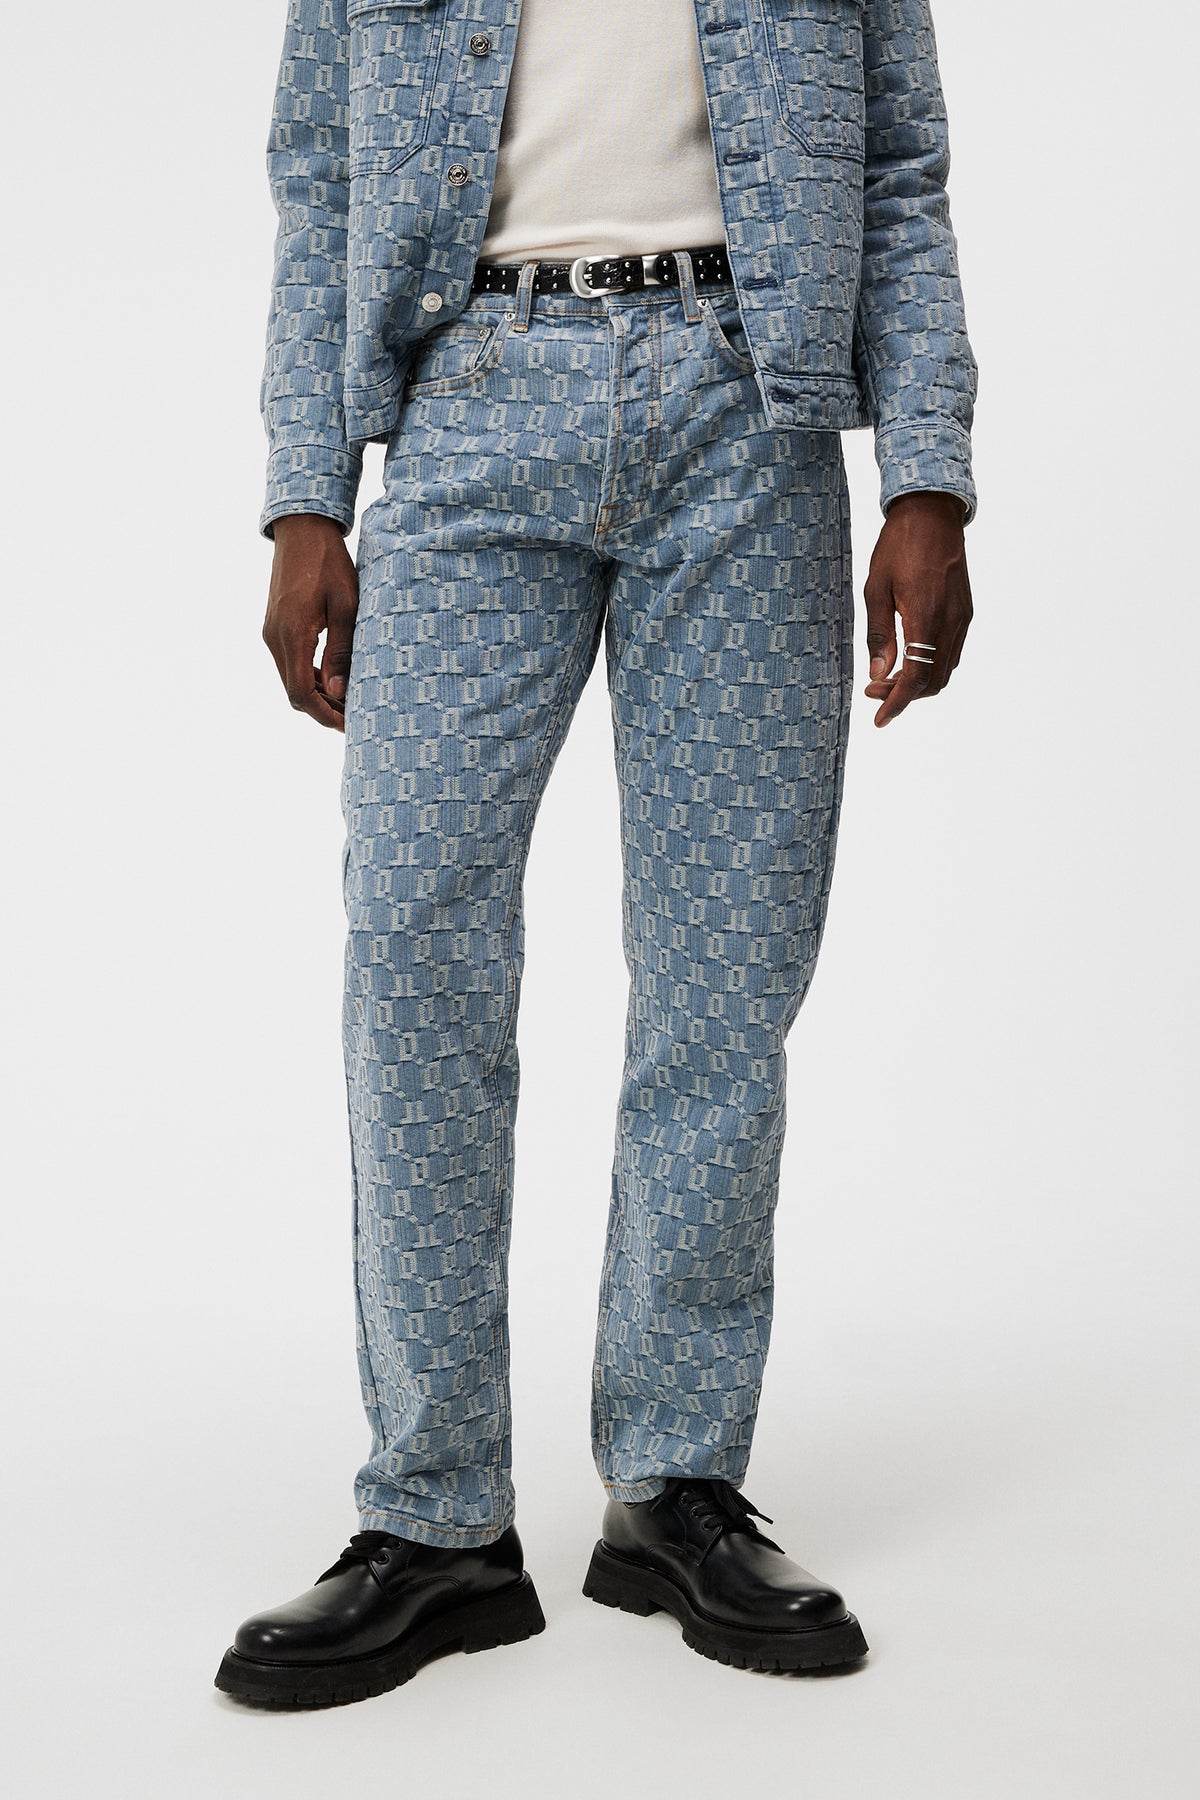 Louis Vuitton Monogram Printed Denim Pants Indigo. Size 29